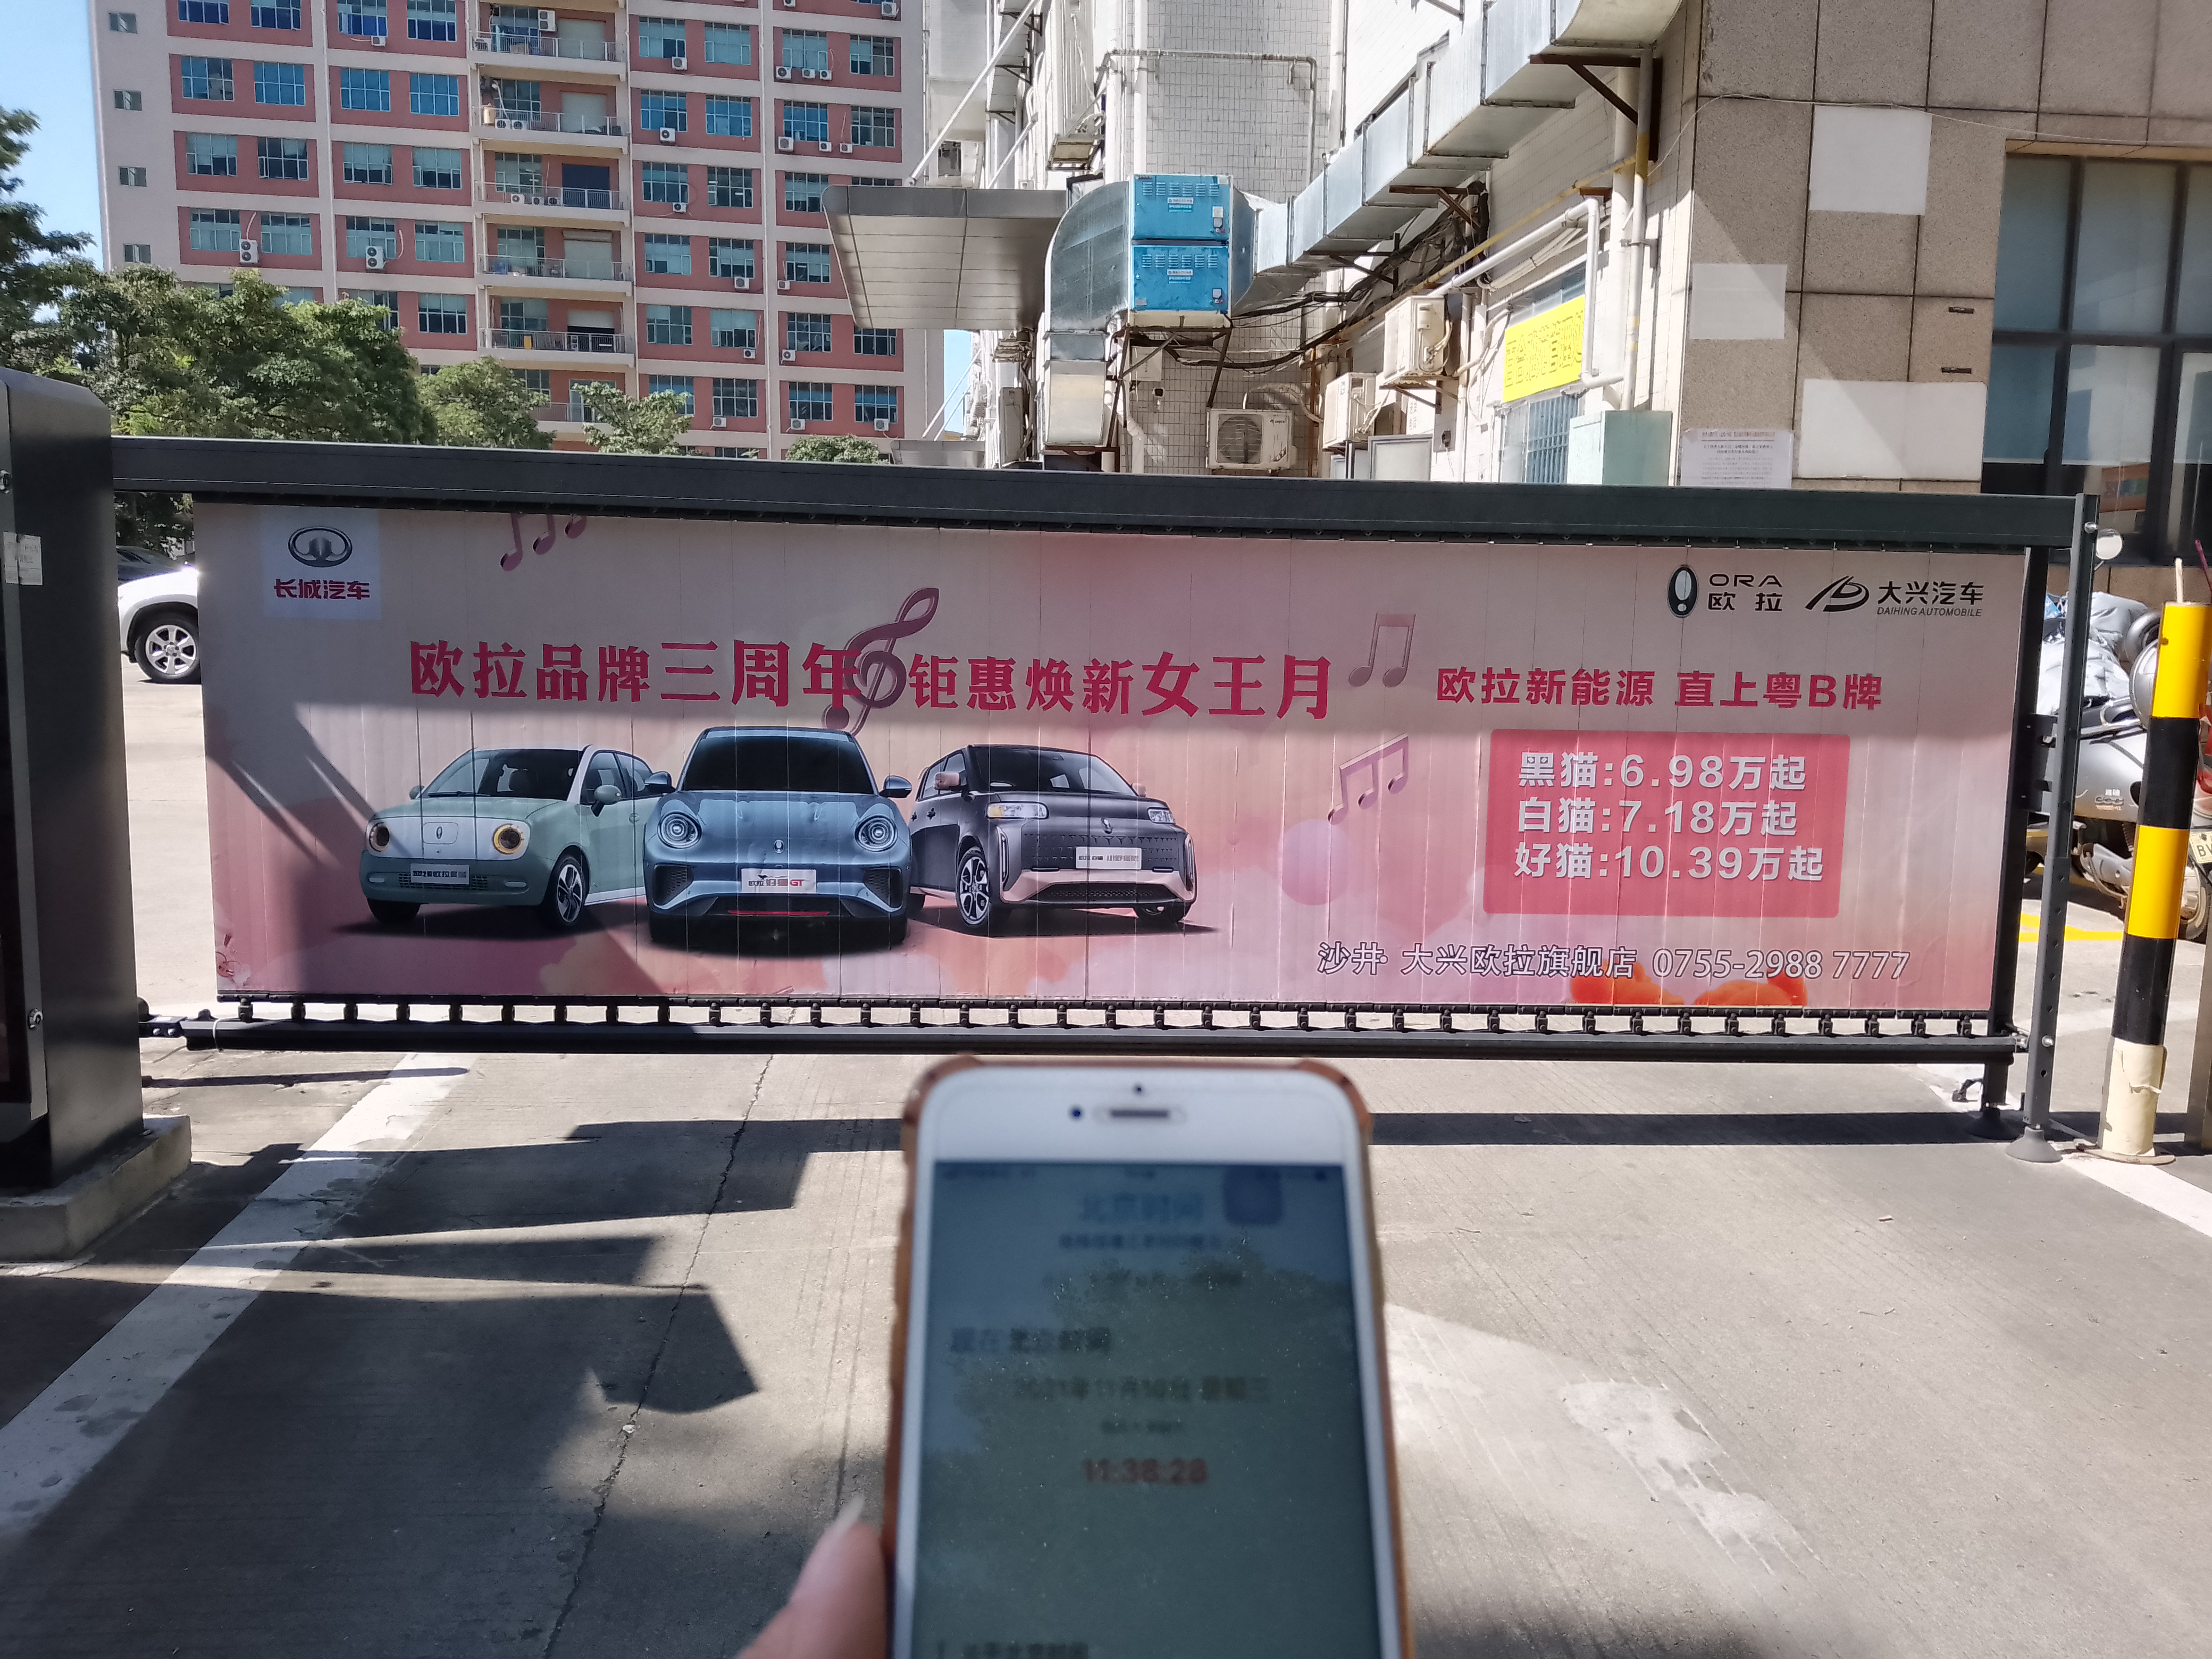 欧拉品牌三周年|广信和传媒助力深圳大兴汽车投放道闸广告